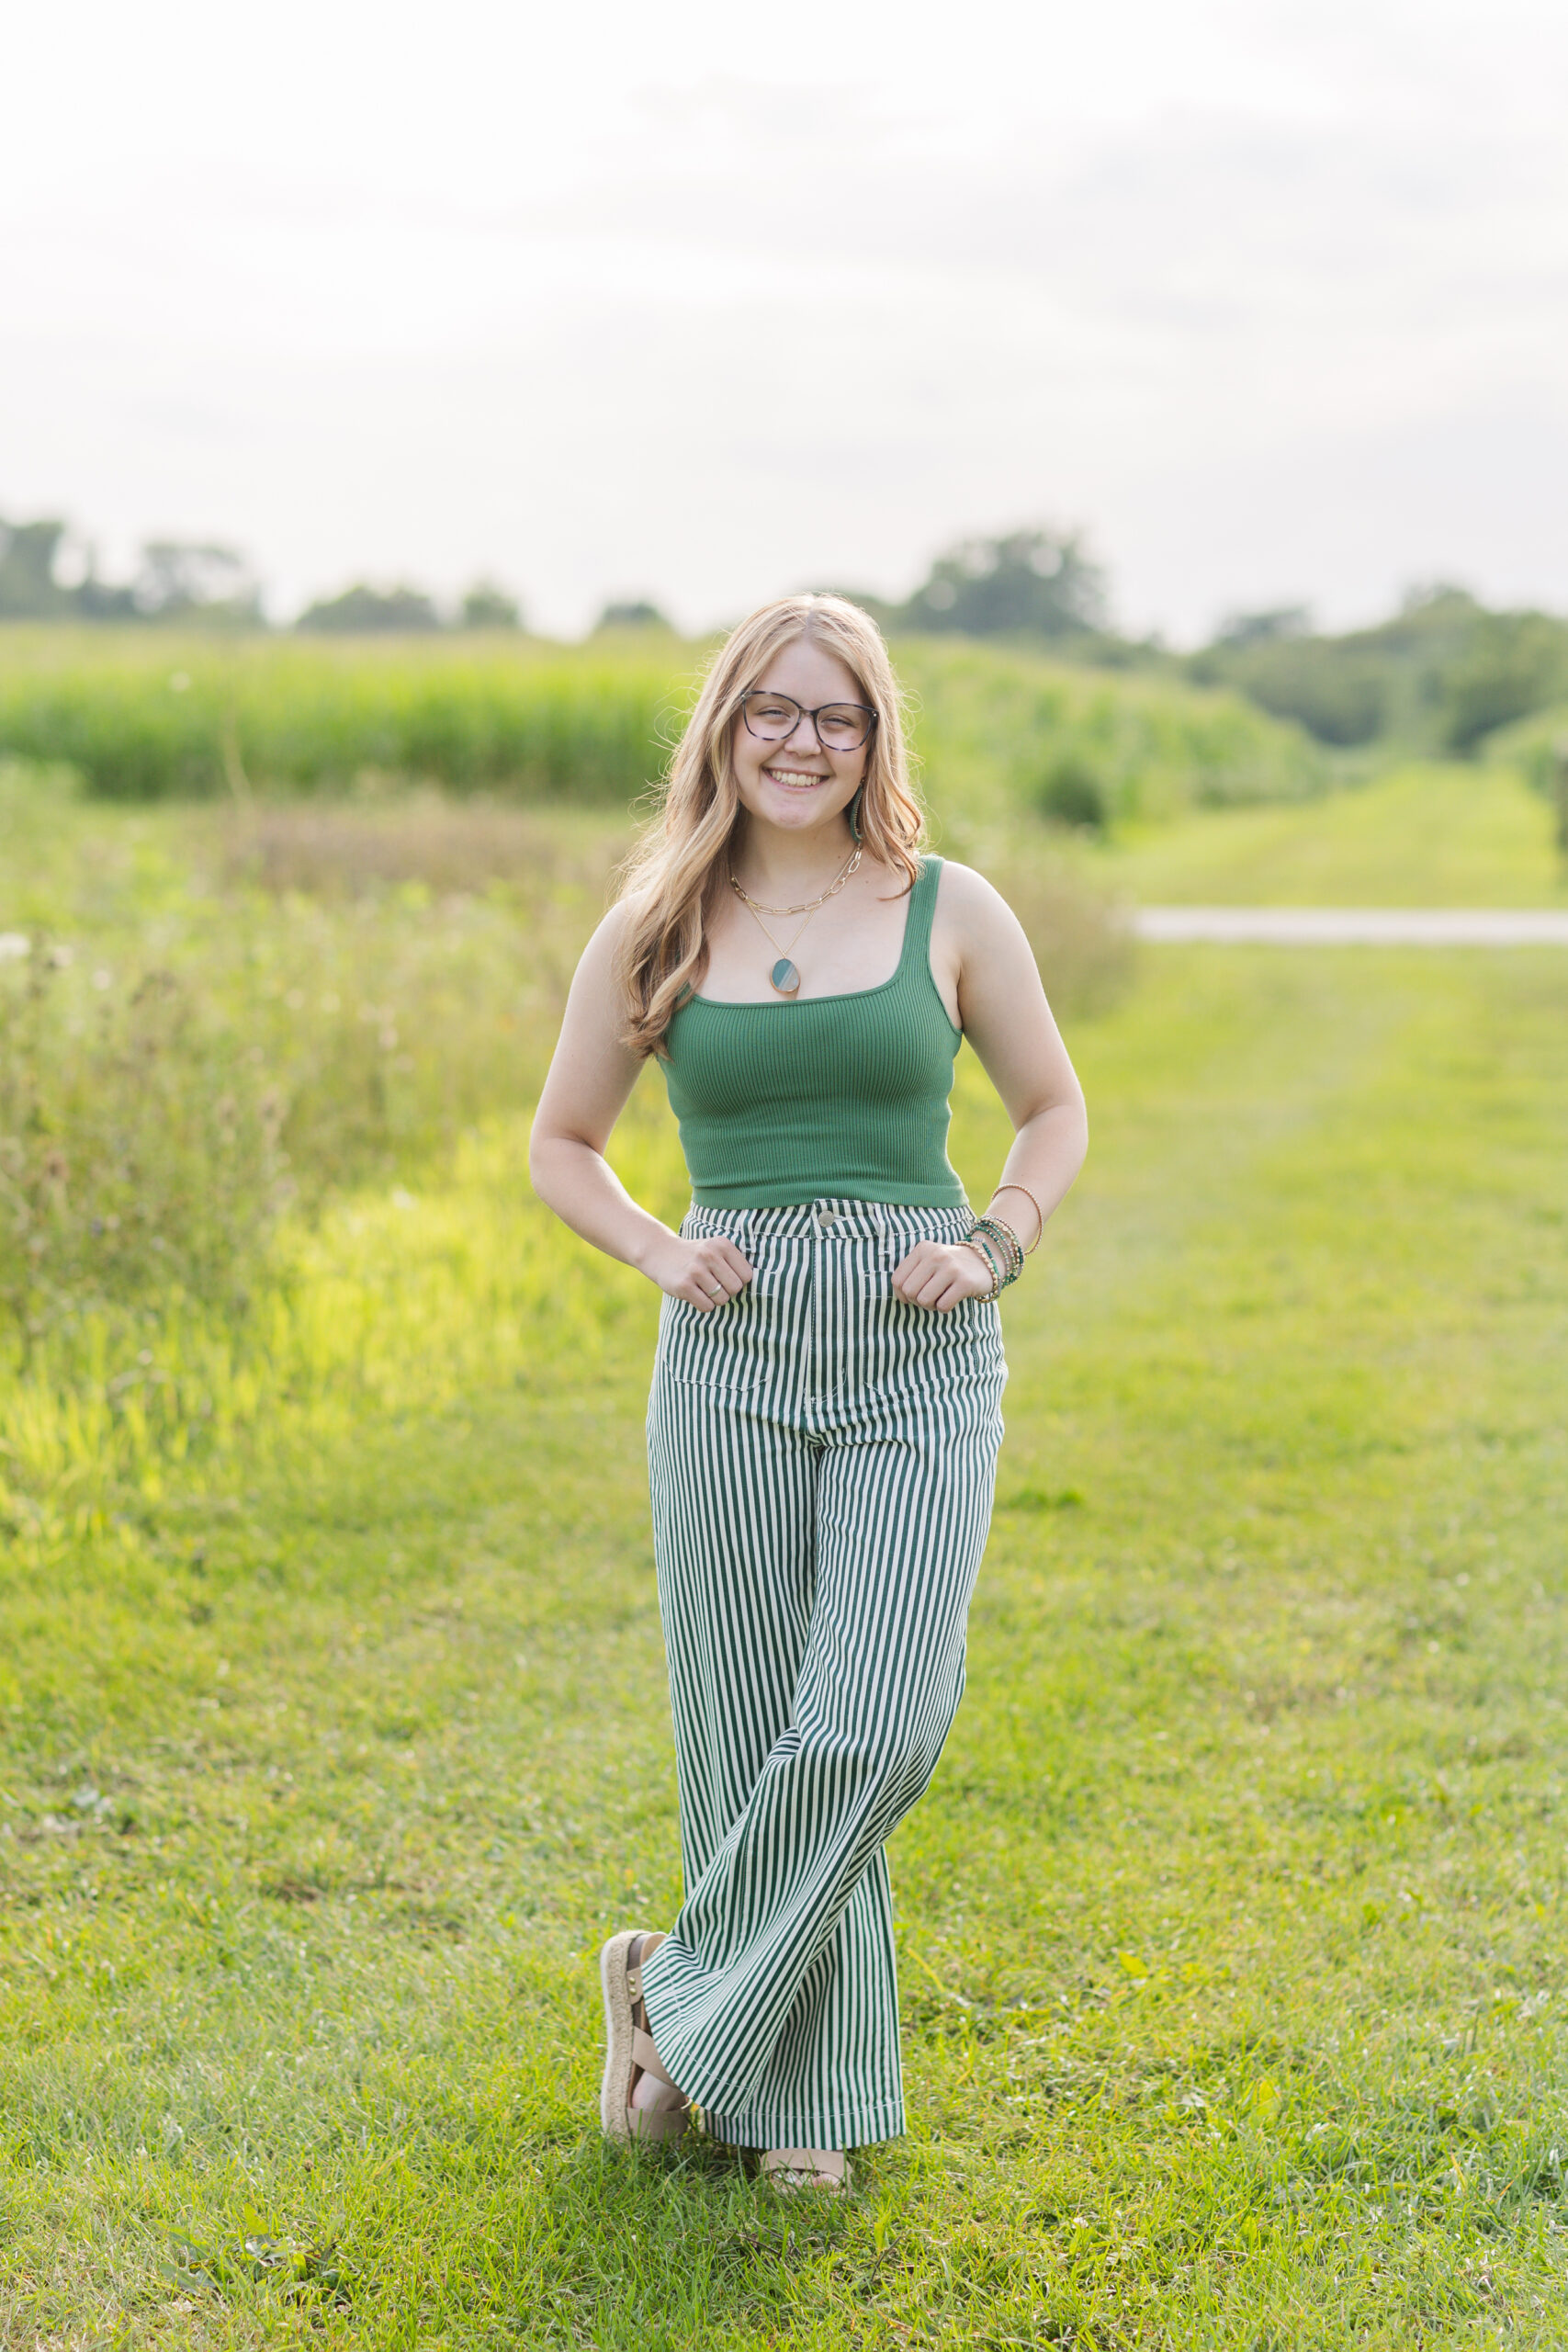 high school senior posing near a field in Ohio